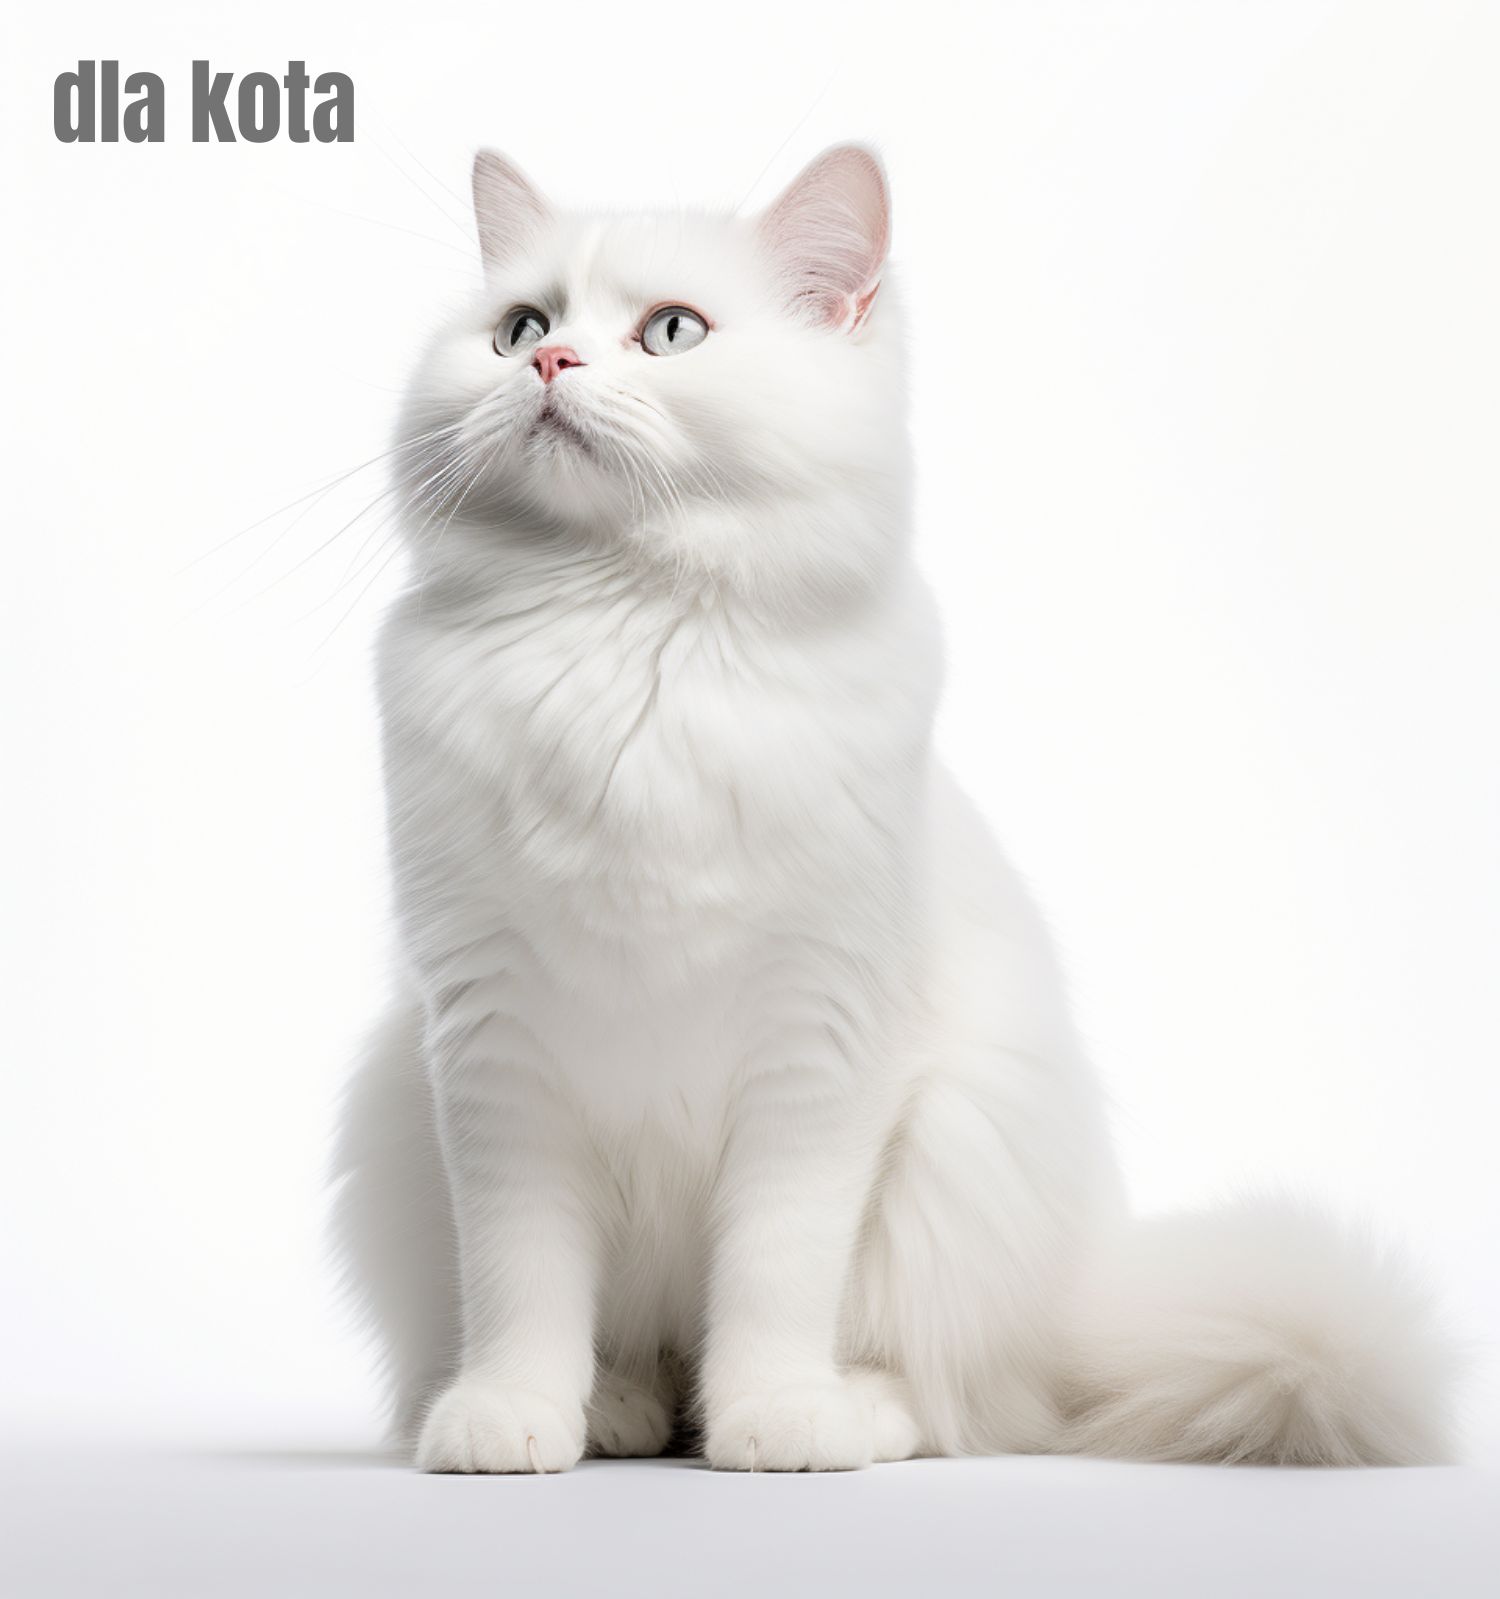 Karma dla kota - pupilkarma.pl sklep internetowy polskiego producenta karmy dla kotów